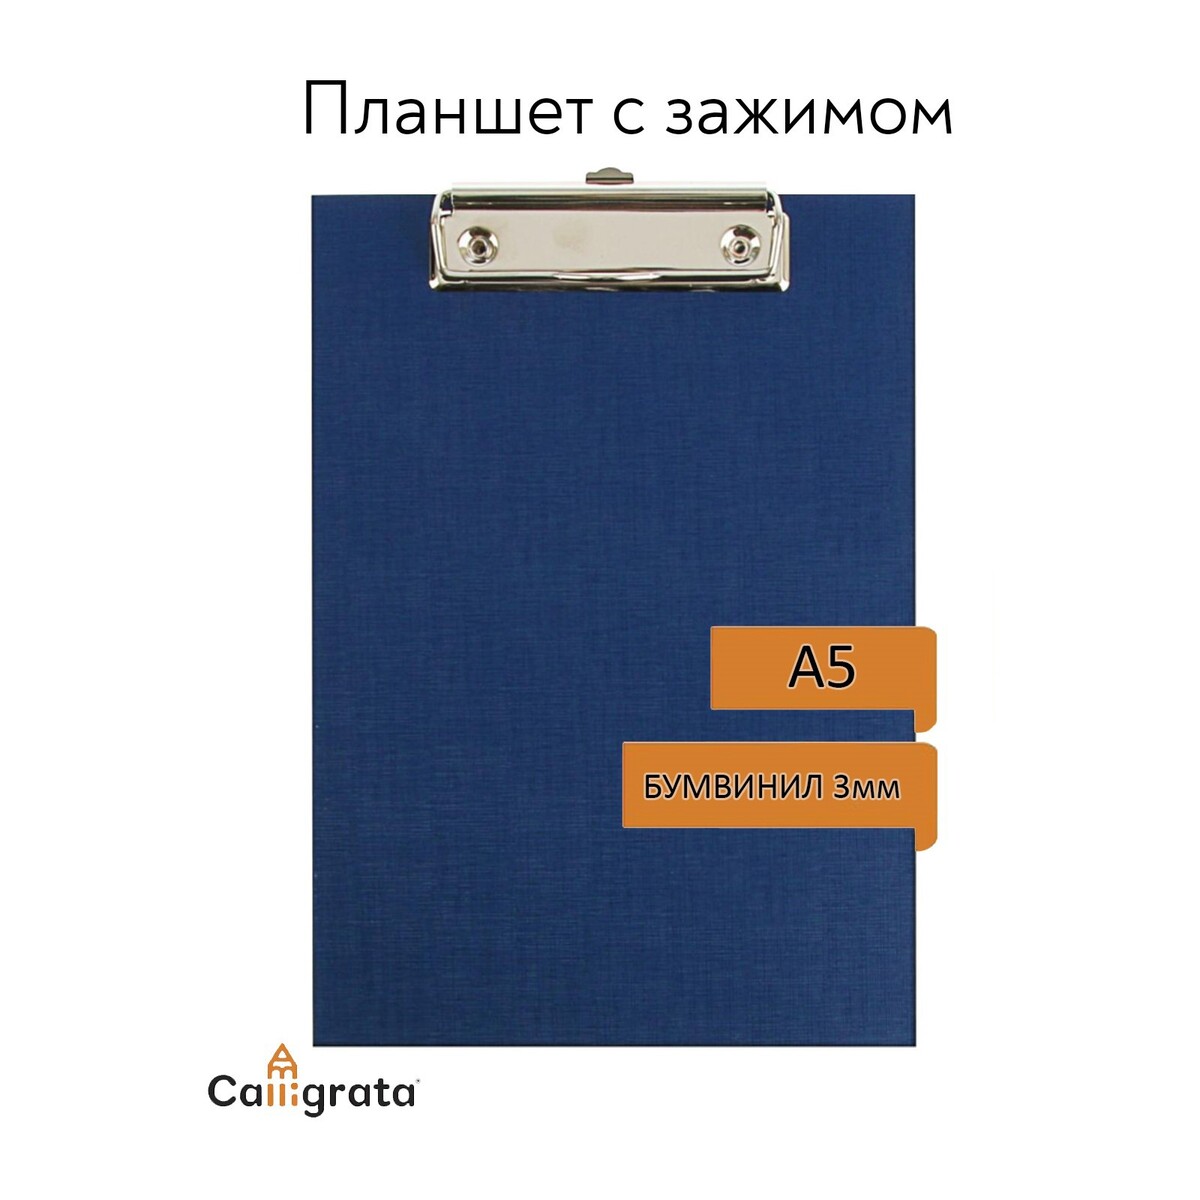 Планшет с зажимом а5, 245 х 175 х 3 мм, покрыт высококачественным бумвинилом, цвет синий (клипборд) планшет с зажимом calligrata а4 пвх синий